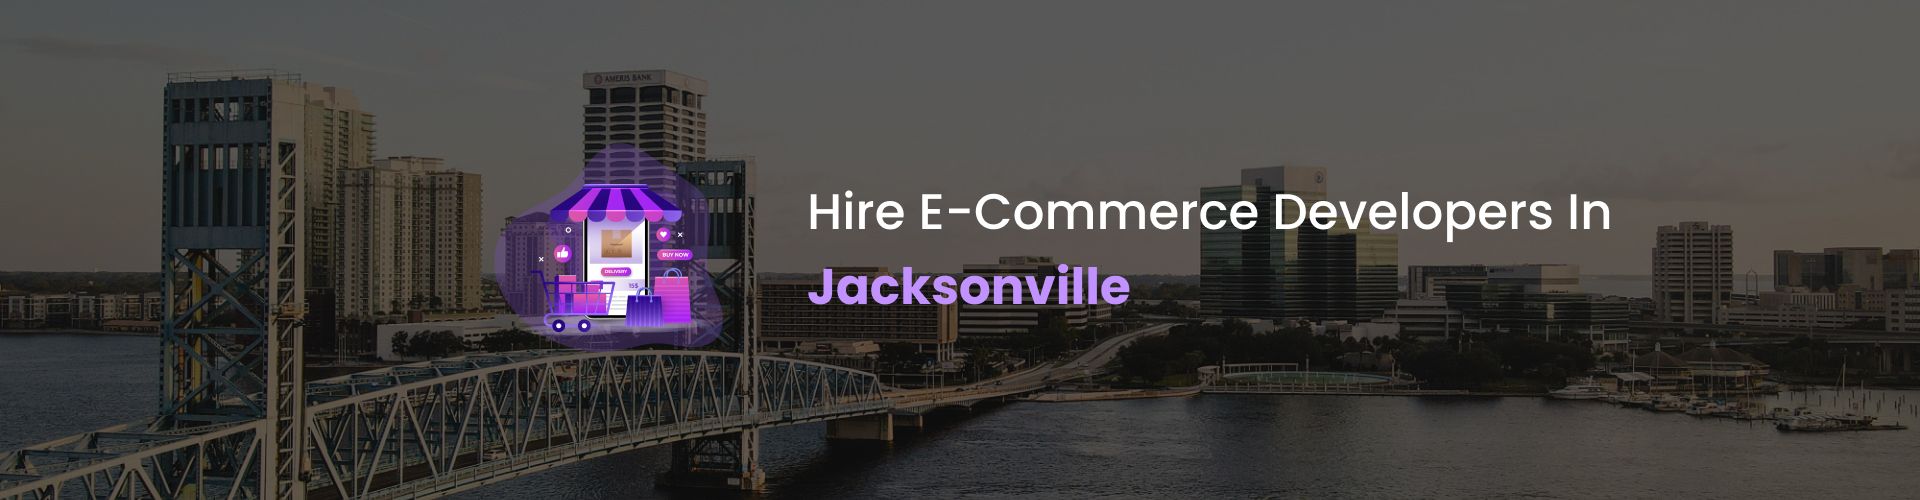 ecommerce developers jacksonville